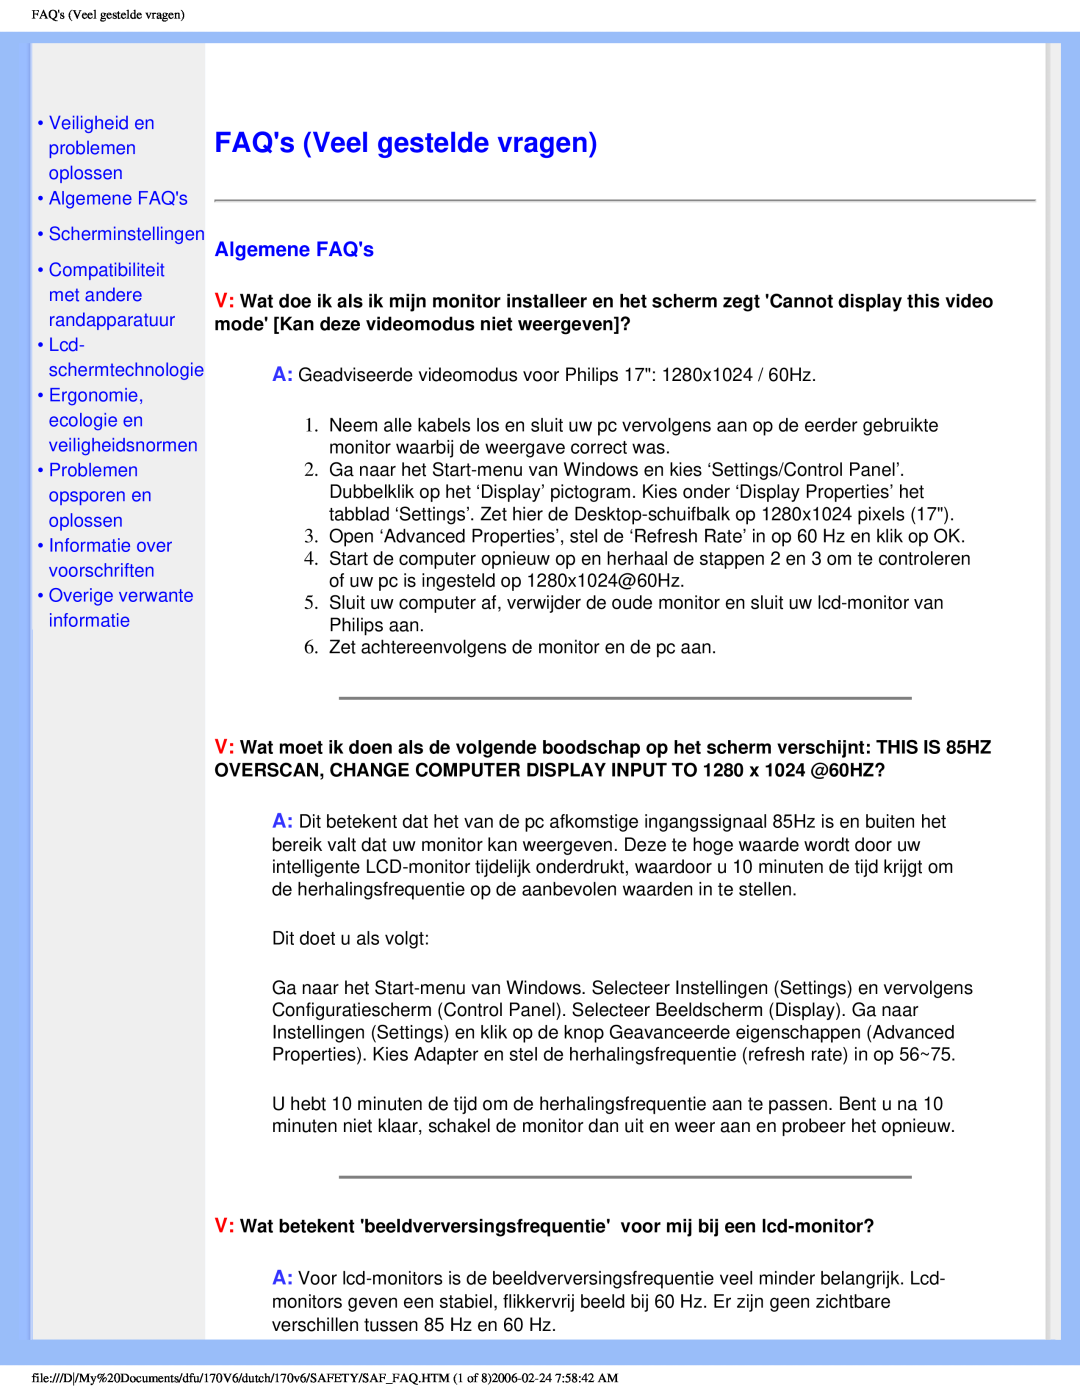 Philips 170V6 user manual FAQs Veel gestelde vragen, Veiligheid en problemen oplossen Algemene FAQs, Scherminstellingen 